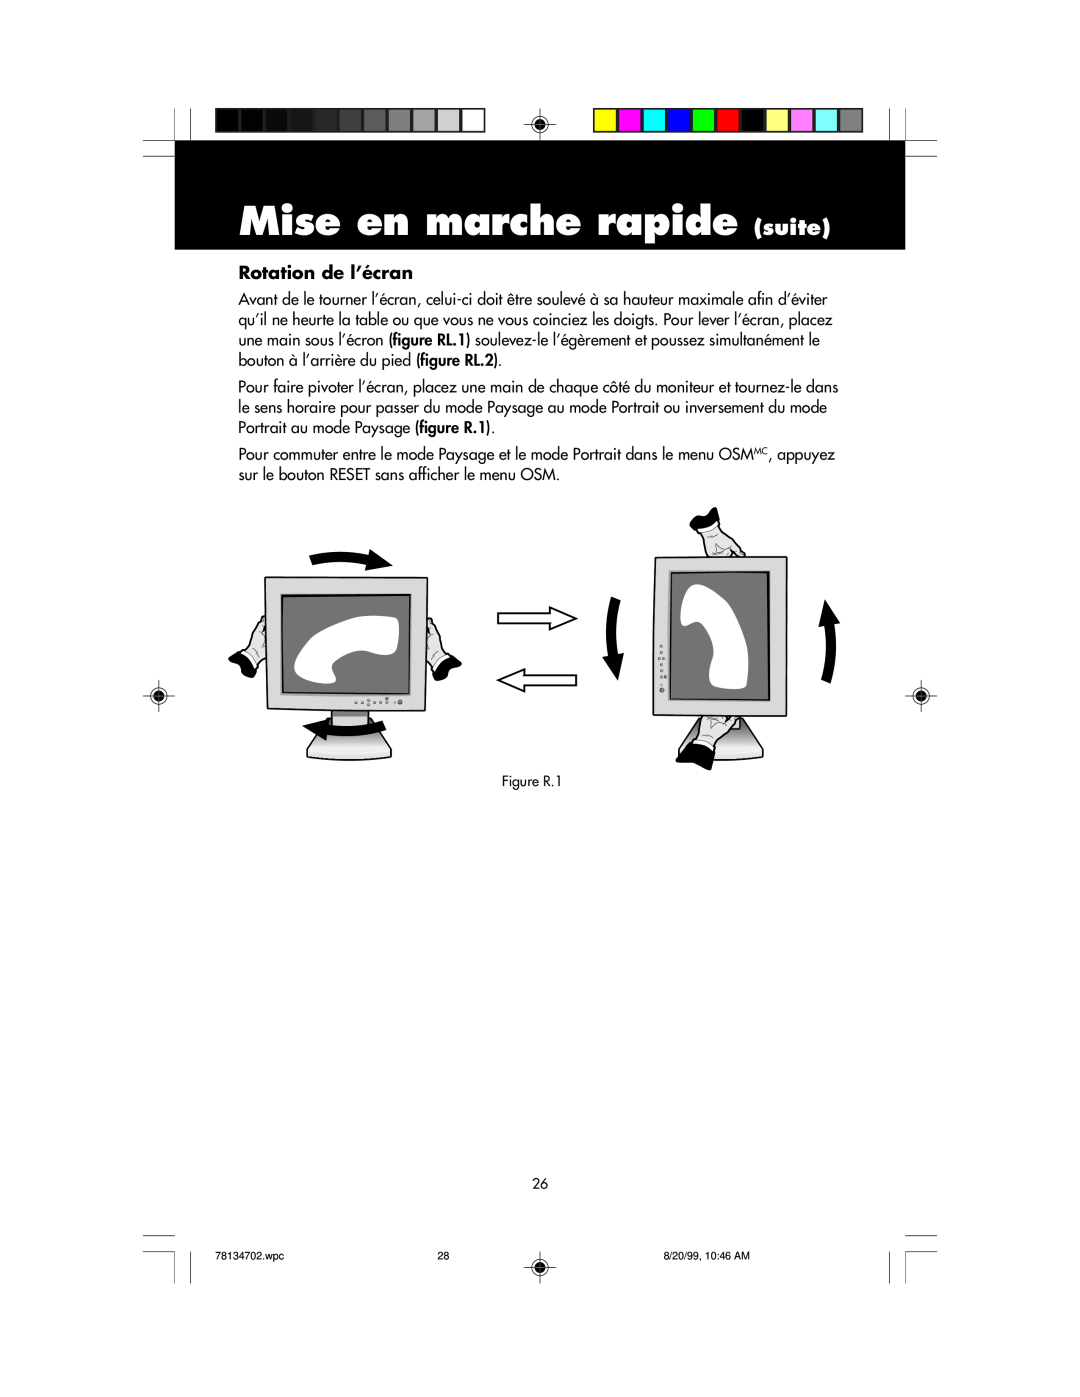 NEC LCD1510+ user manual Mise en marche rapide suite, Rotation de l’écran, Figure R.1 26 